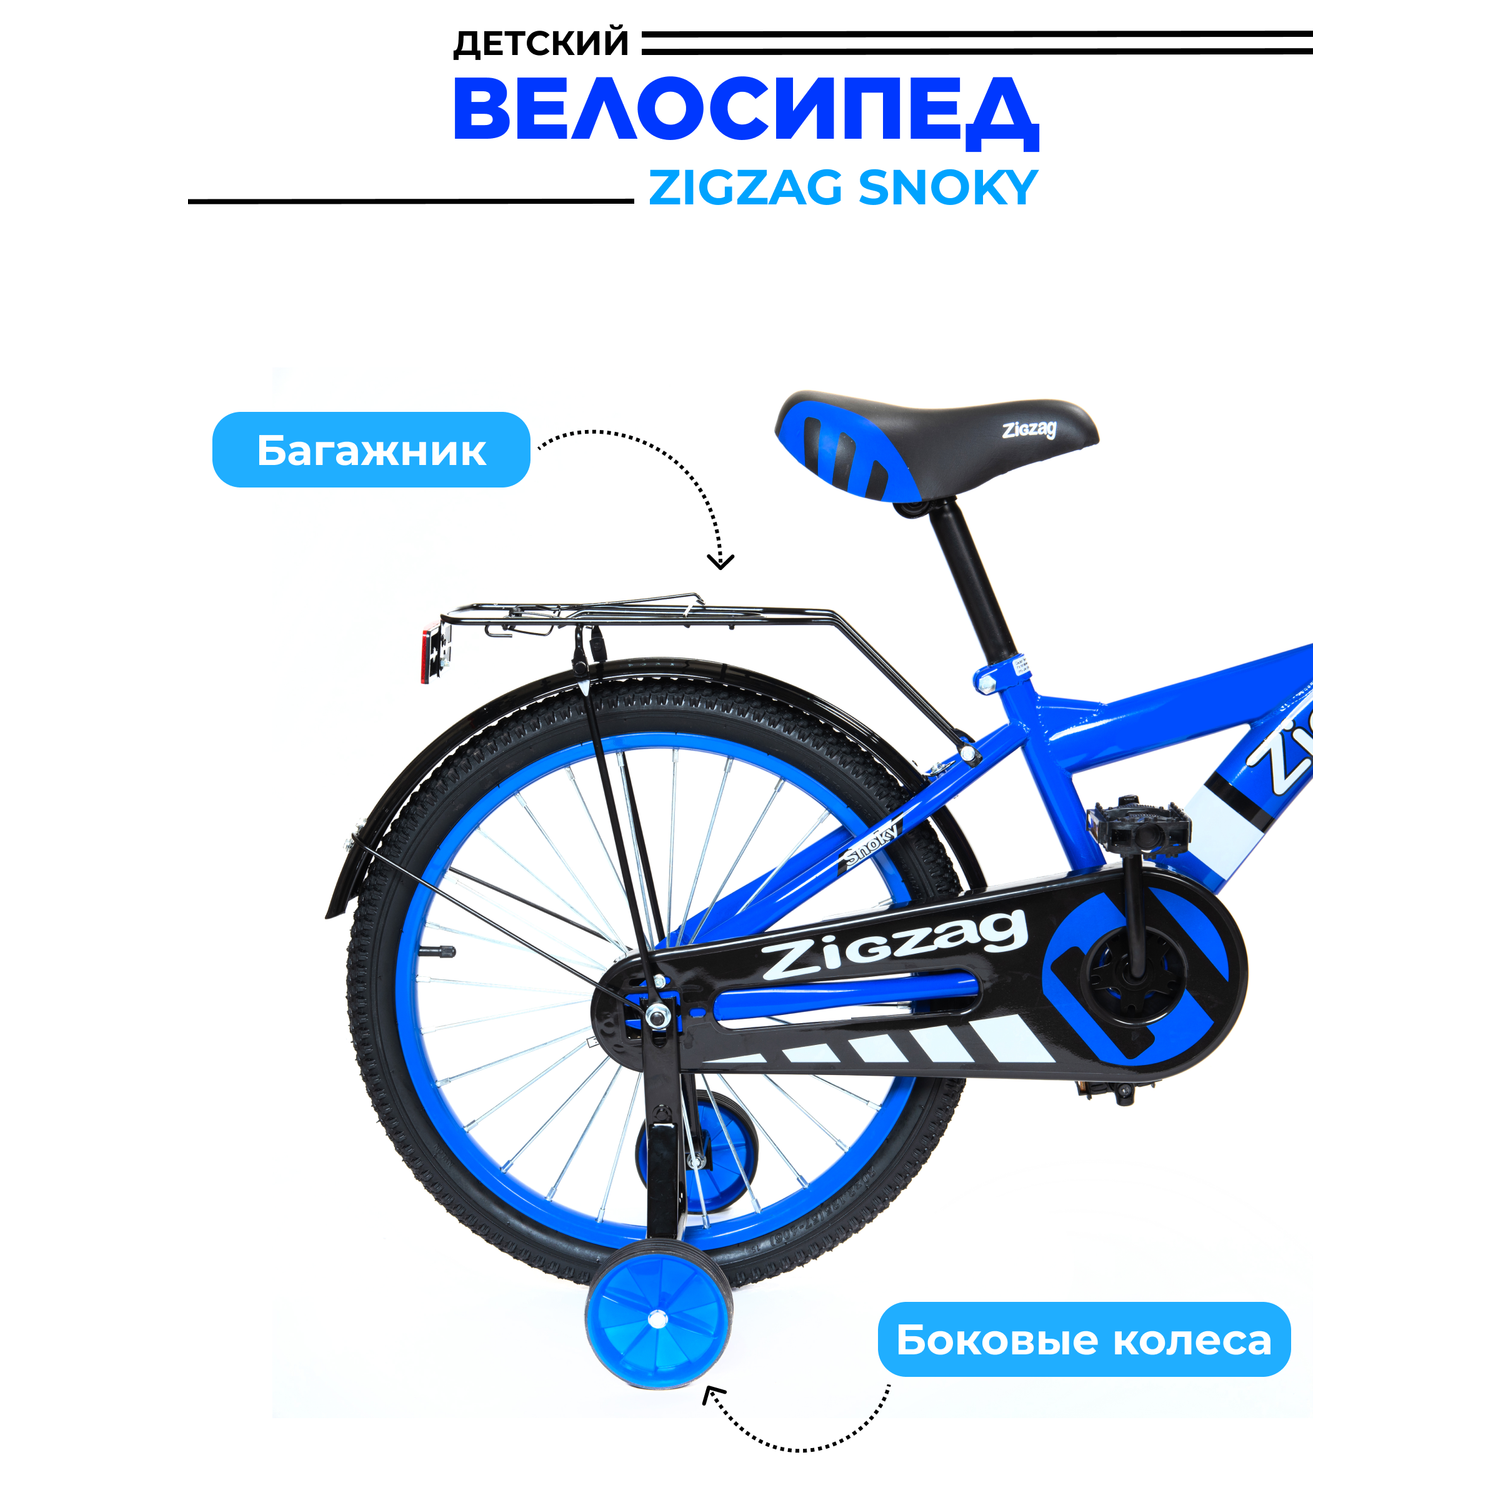 Велосипед ZigZag SNOKY синий 16 дюймов - фото 3